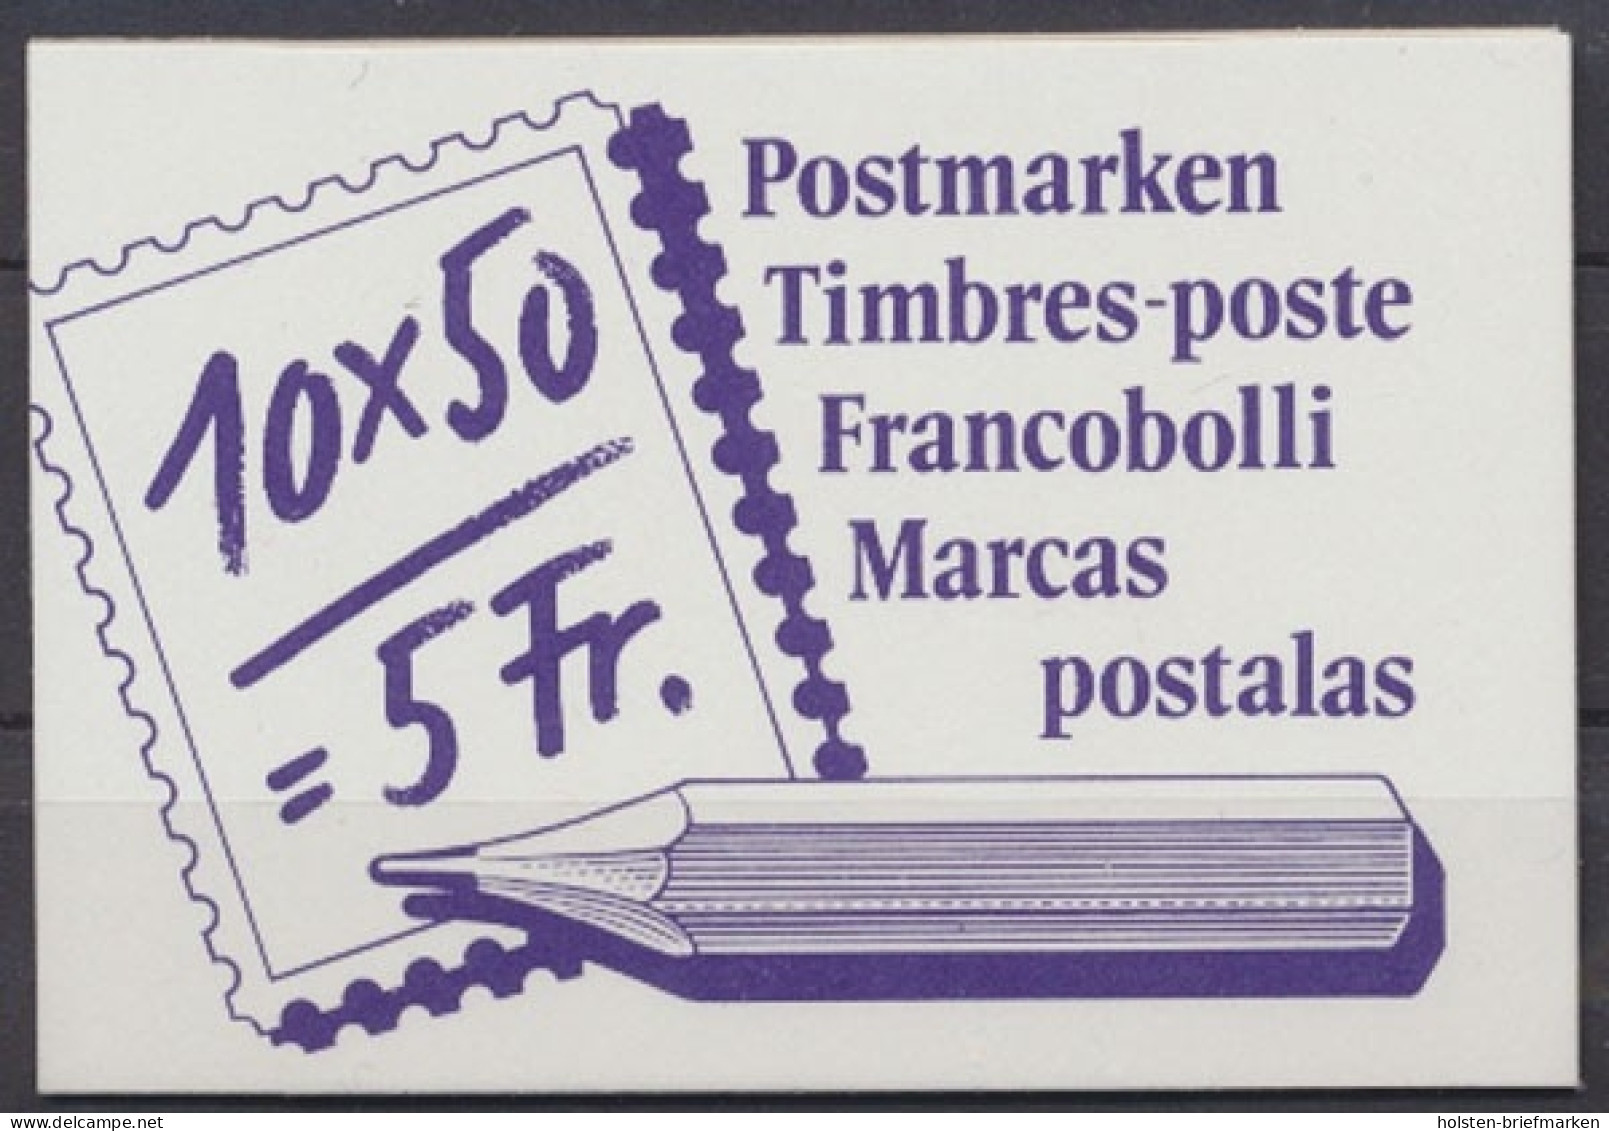 Schweiz, MiNr. MH 0-84, Postfrisch - Booklets